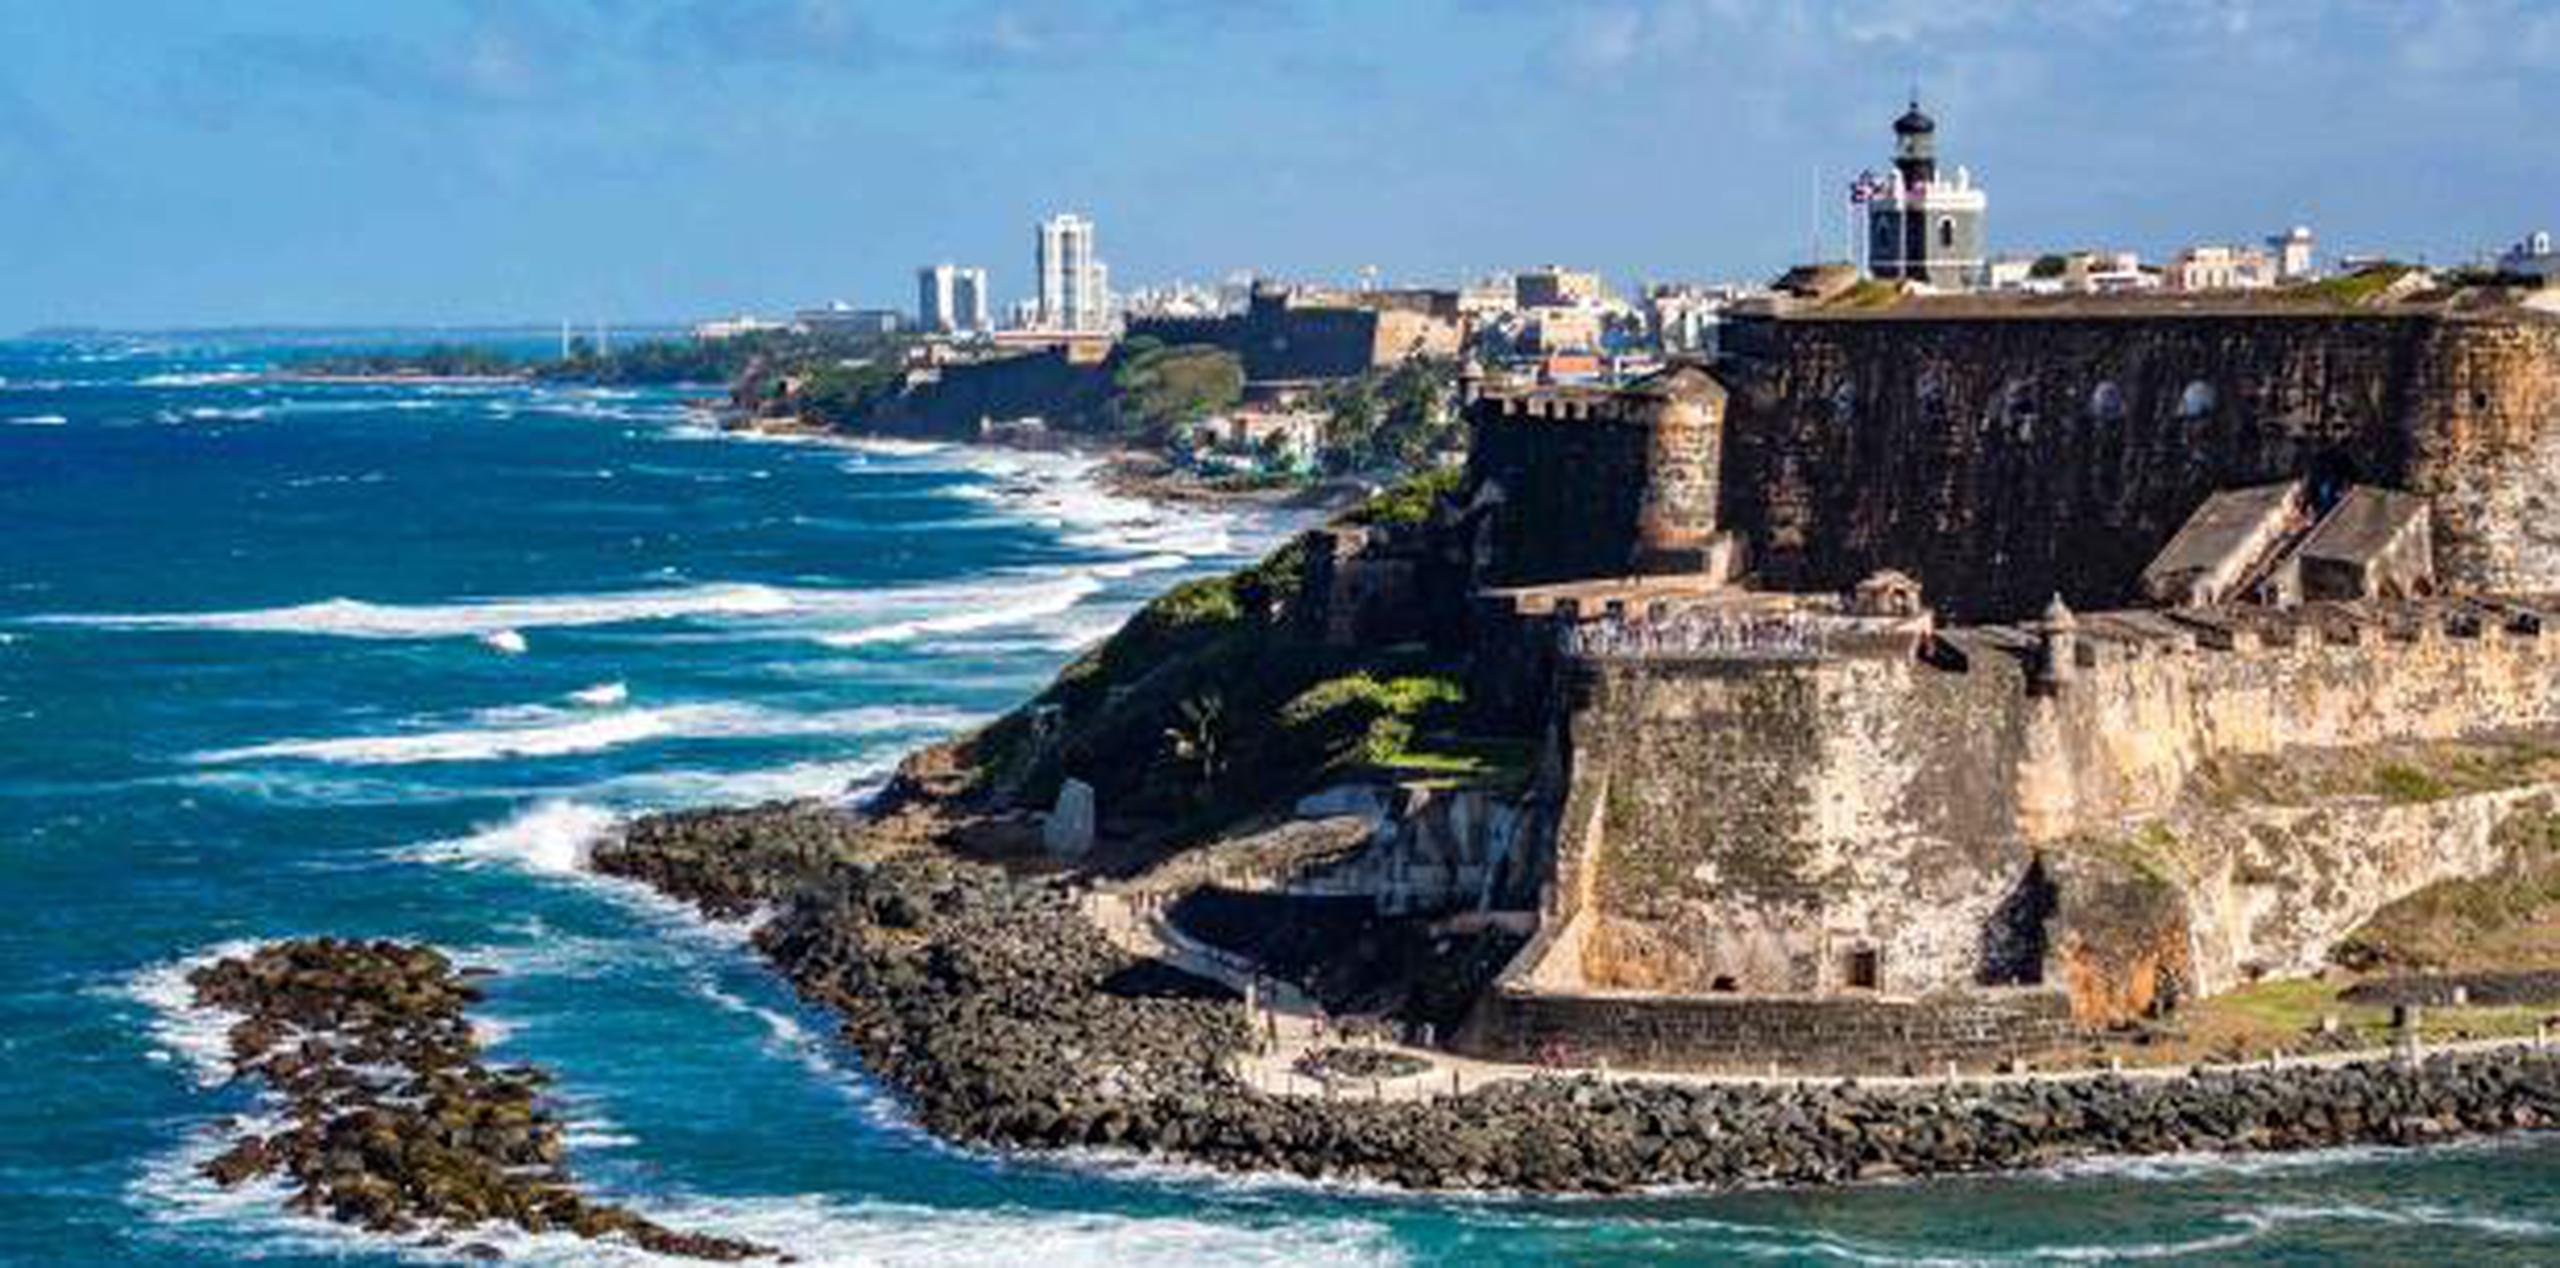 Con el fin de acoger al visitante, la isla cuenta con casi 140 hoteles y más de 4,000 restaurantes, según presenta Discover Puerto Rico en la feria. (Archivo)